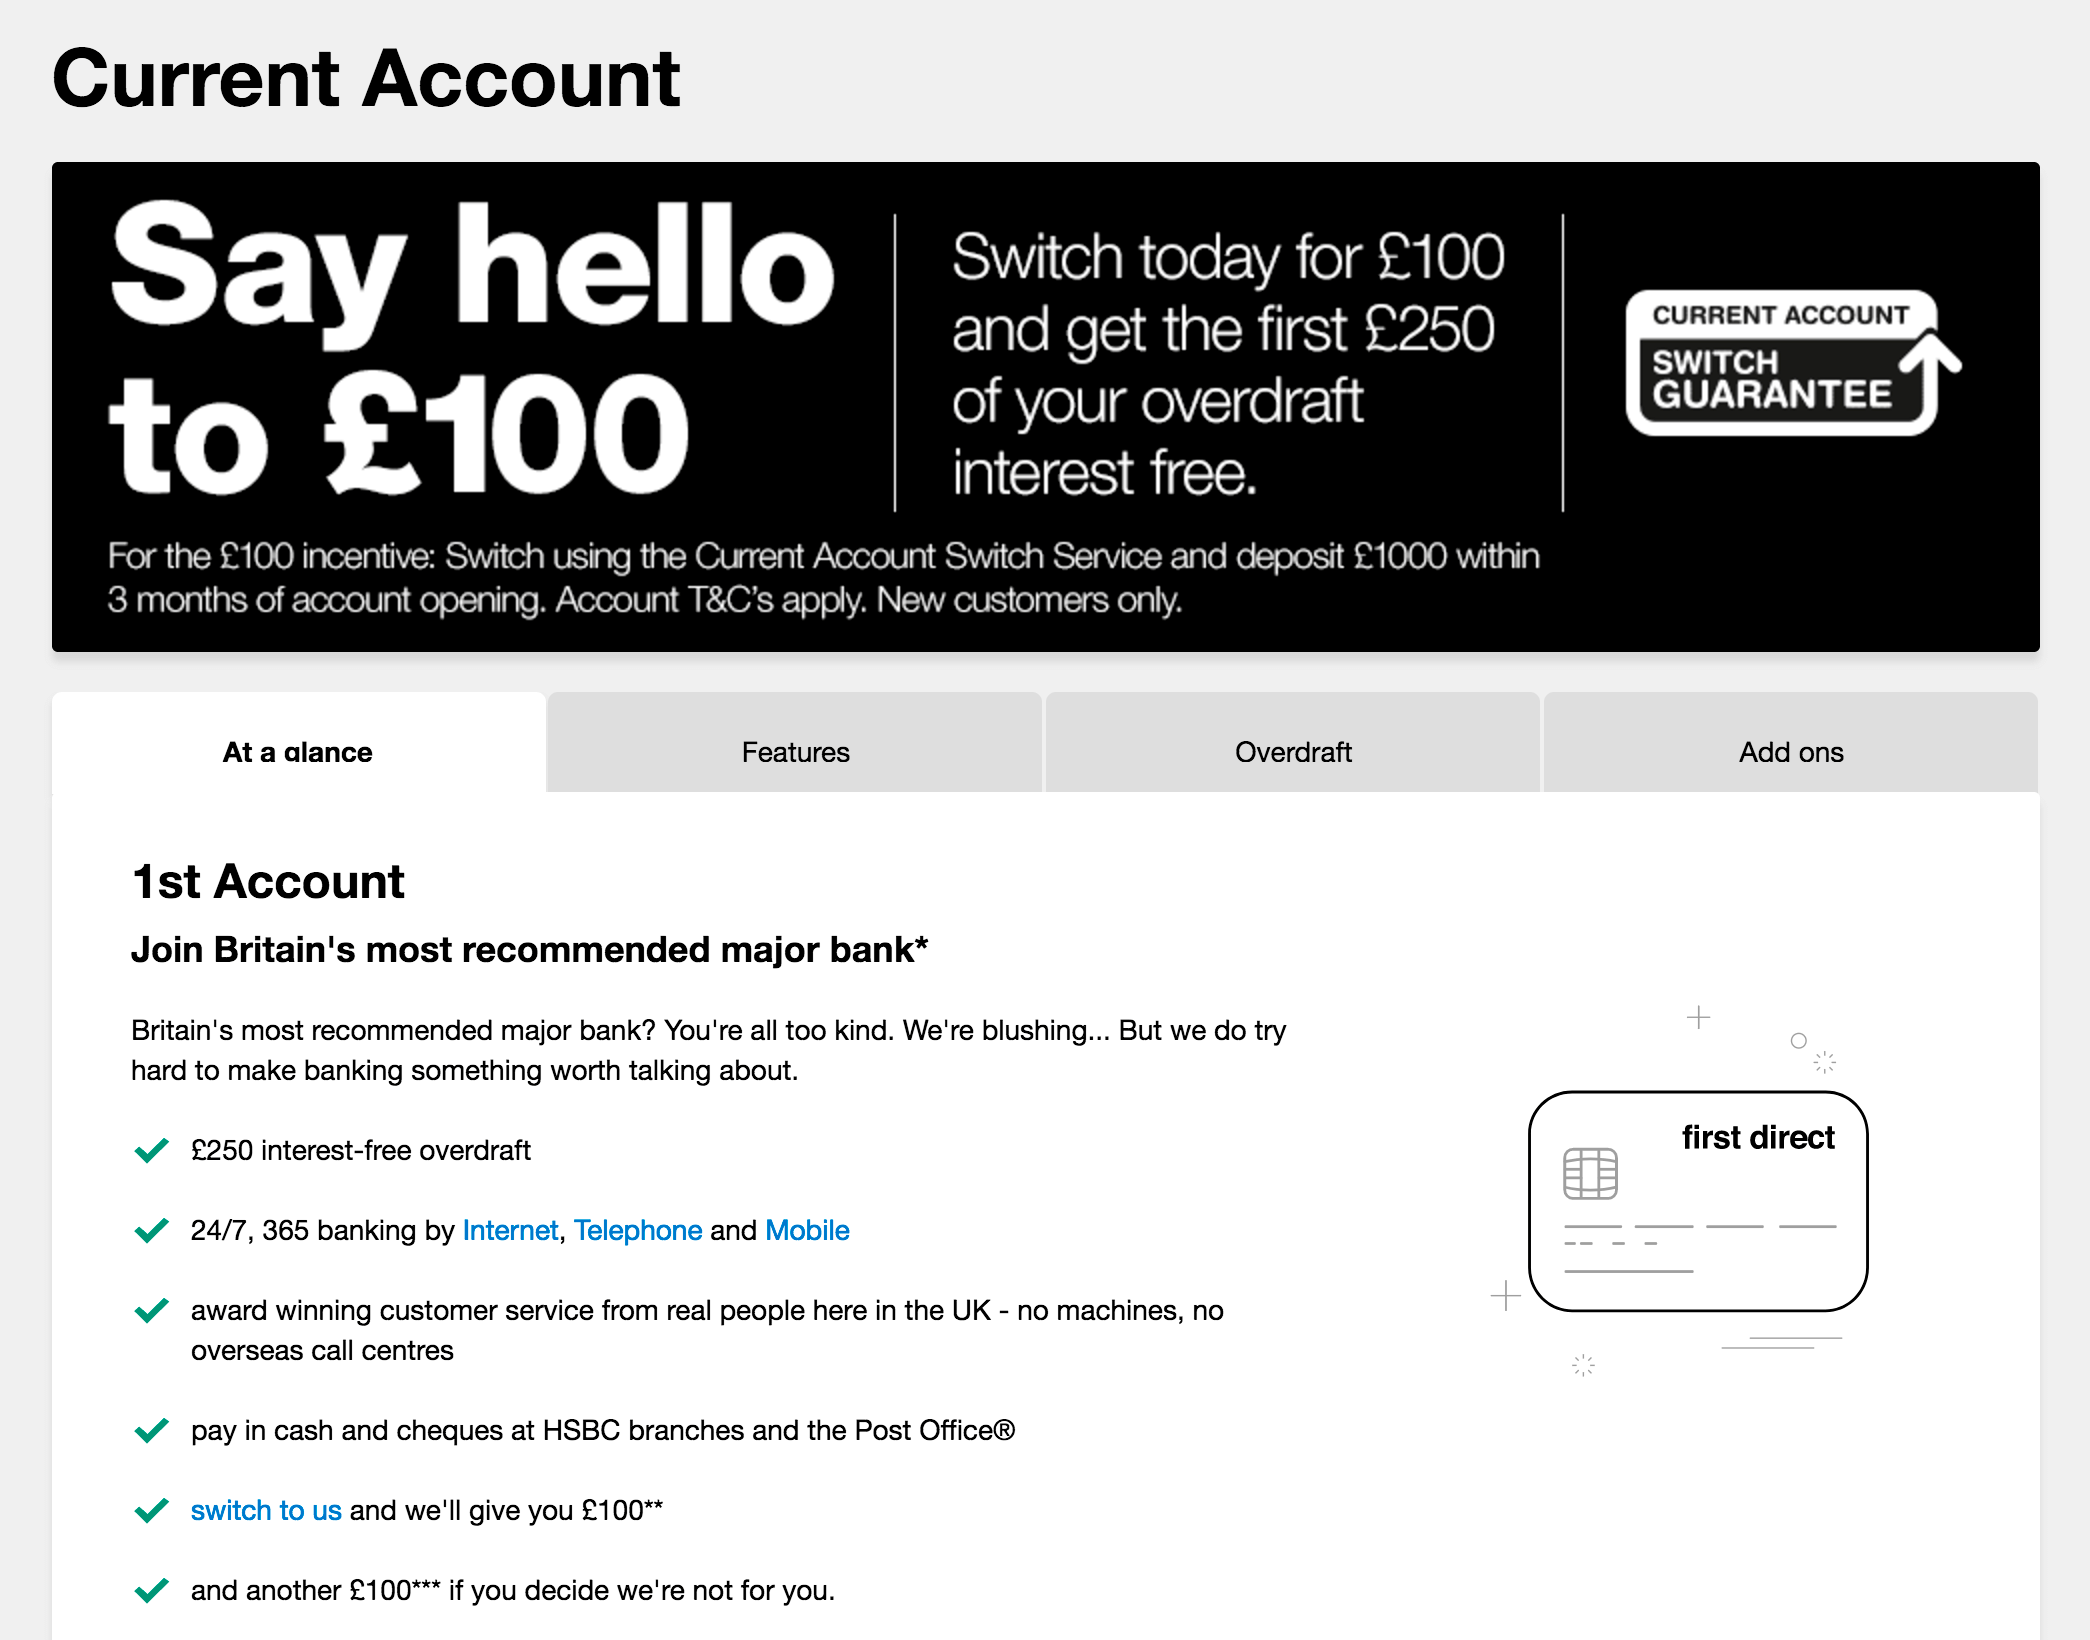 100 £ на счет новым клиентам предлагает банк First Direct